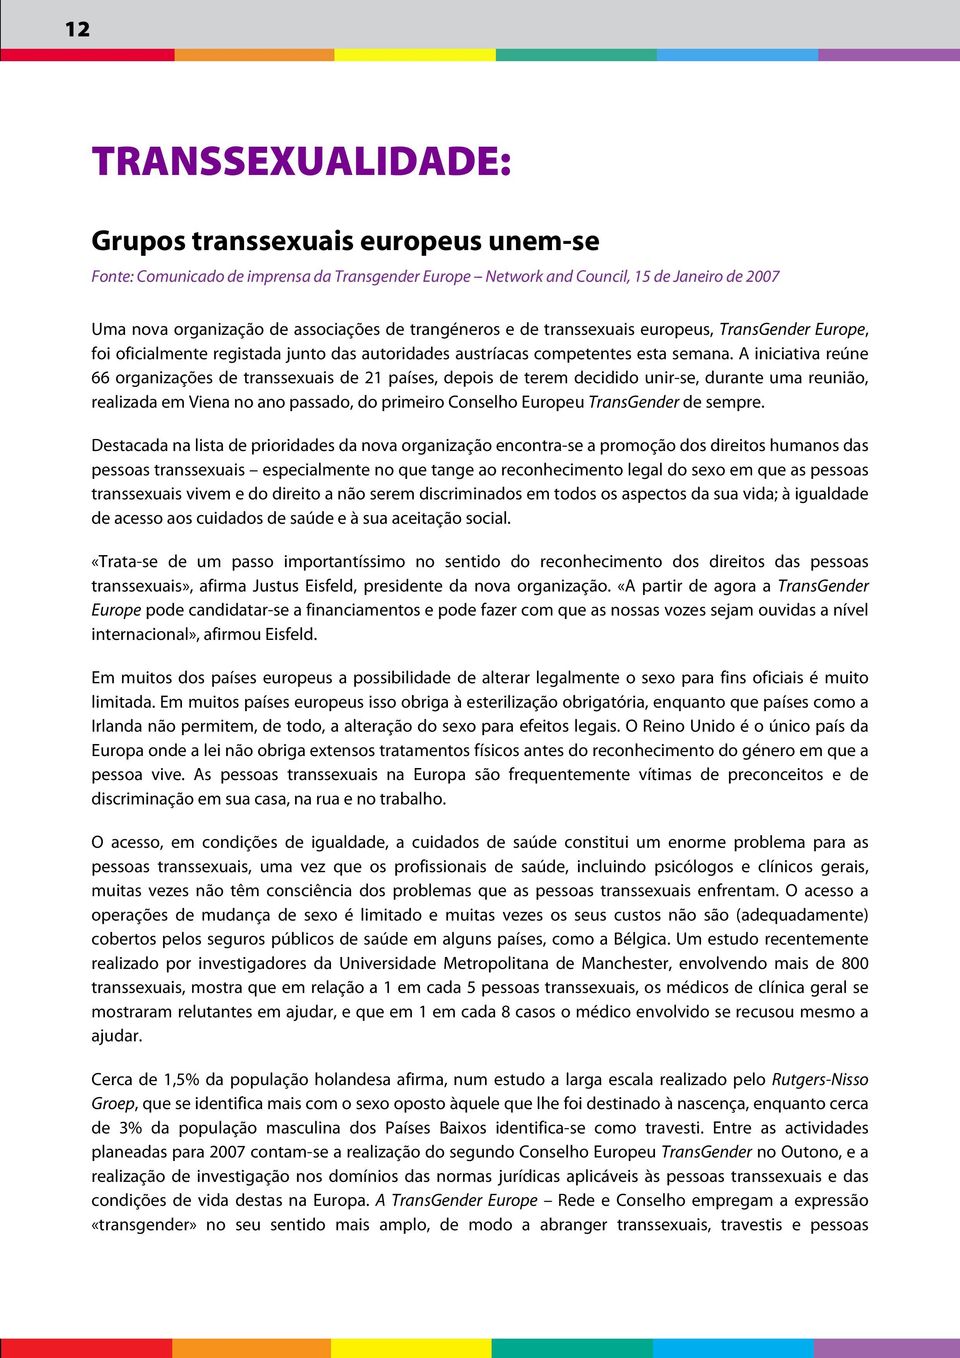 A iniciativa reúne 66 organizações de transsexuais de 21 países, depois de terem decidido unir-se, durante uma reunião, realizada em Viena no ano passado, do primeiro Conselho Europeu TransGender de